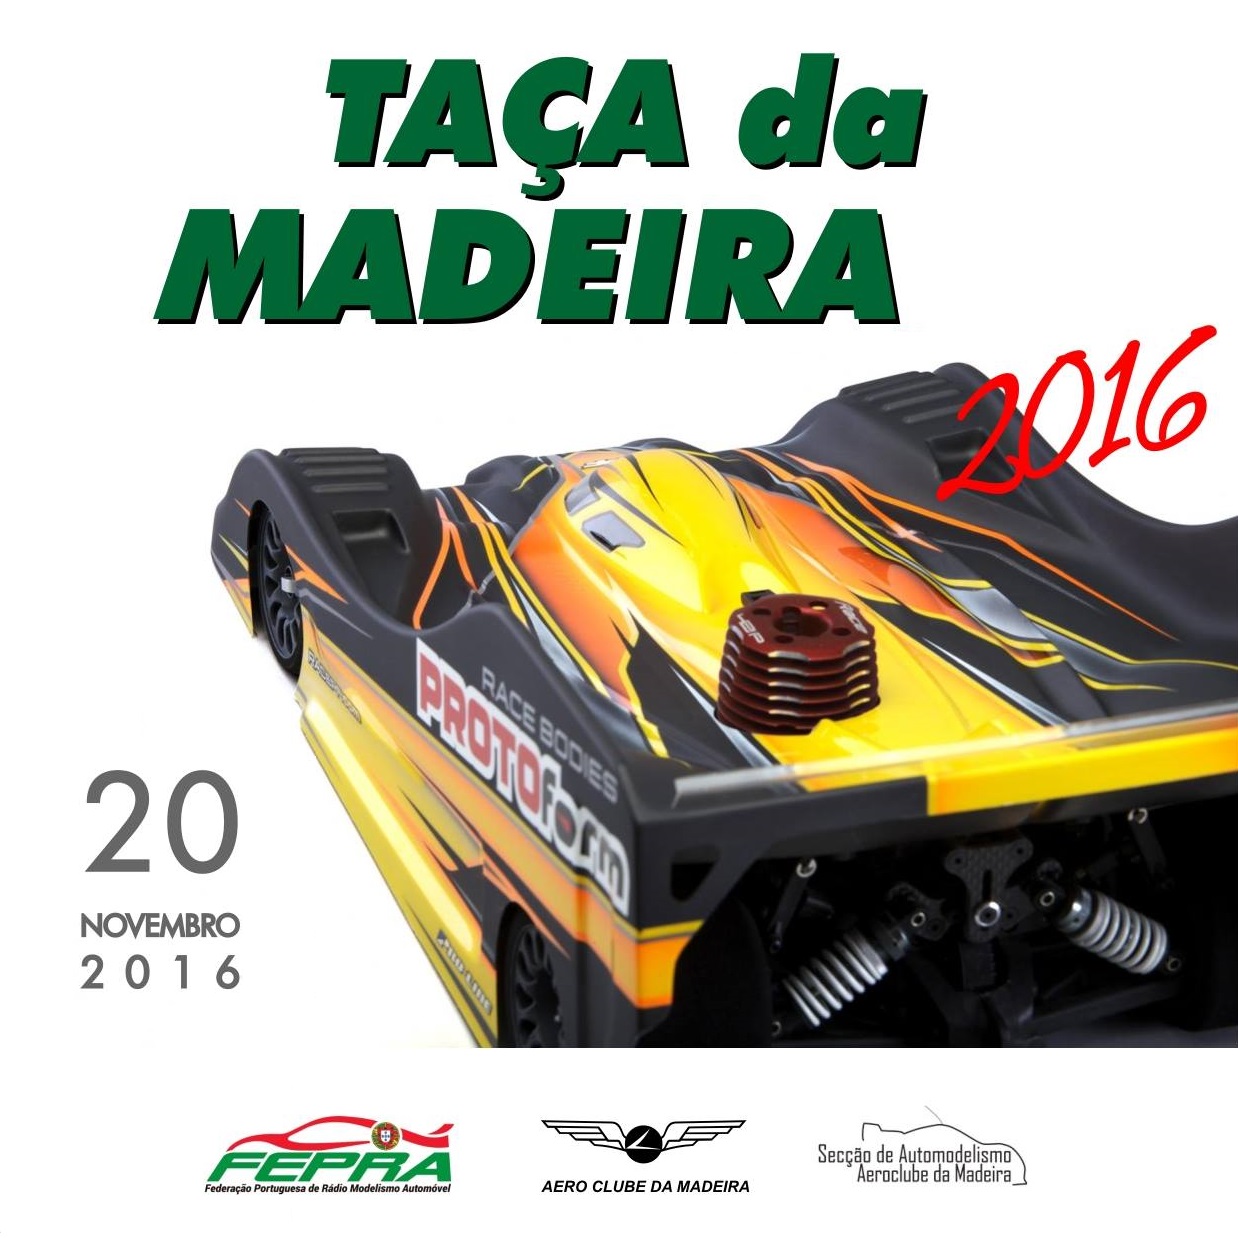 Automodelismo - Taça da Madeira 2016